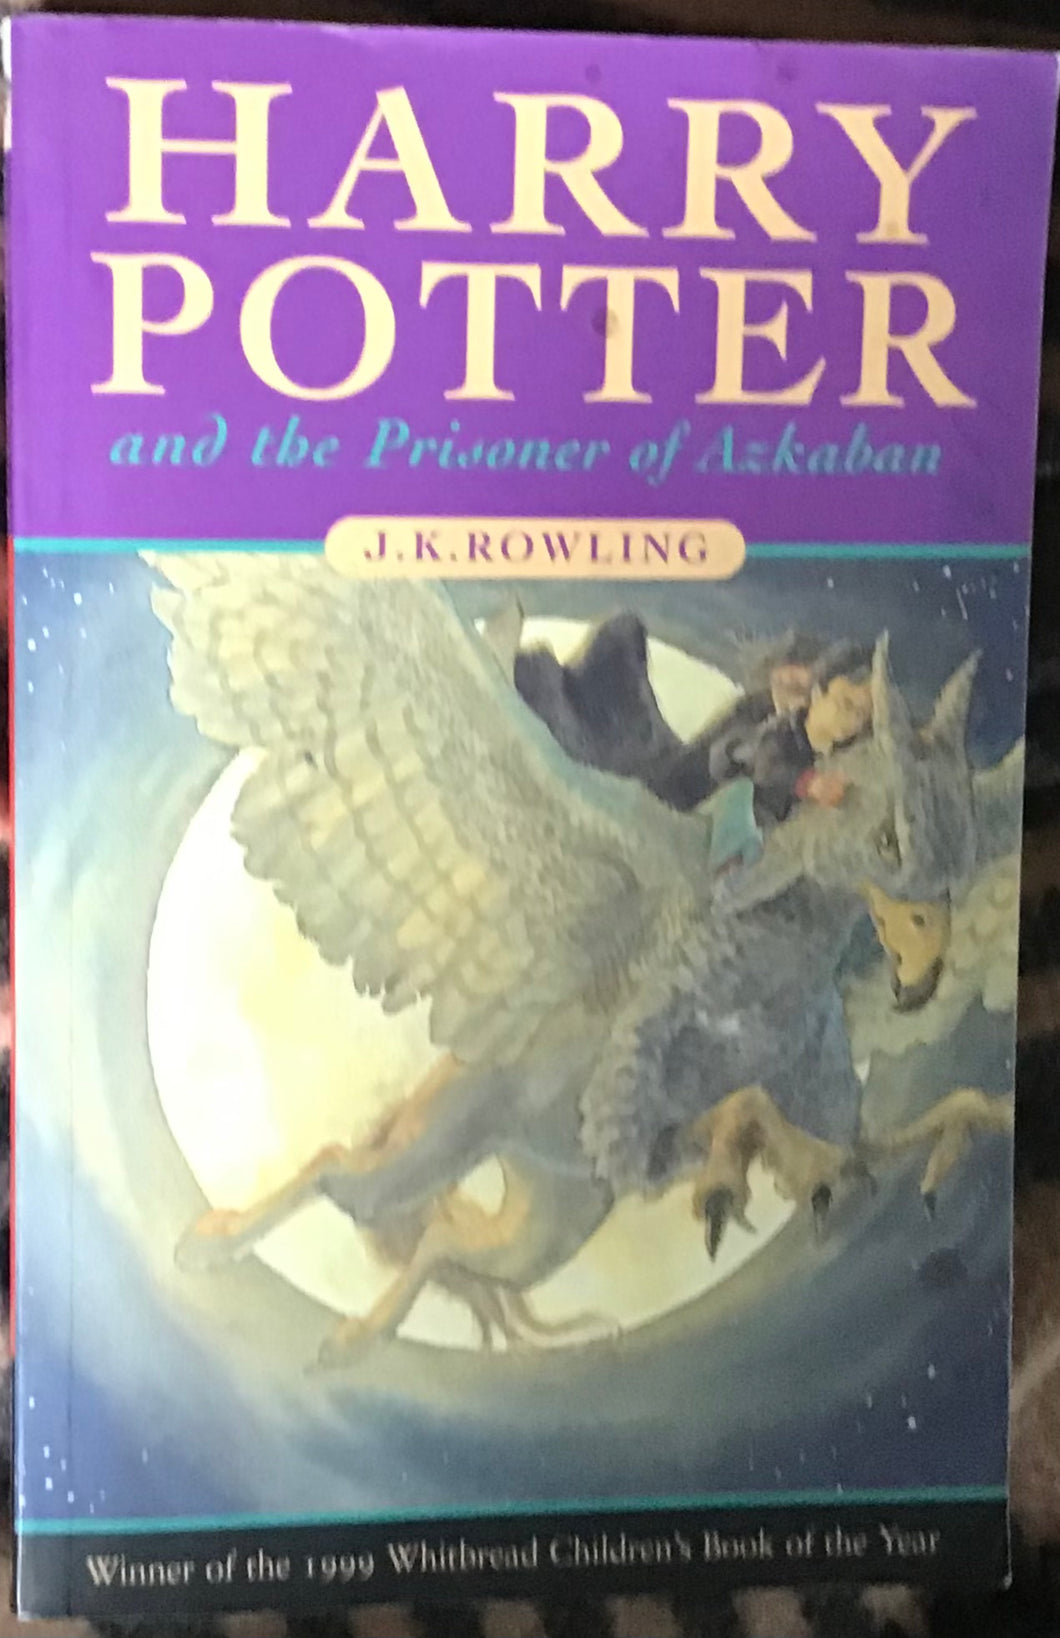 Harry Potter and The Prisoner of Azkaban, J.K. Rowling